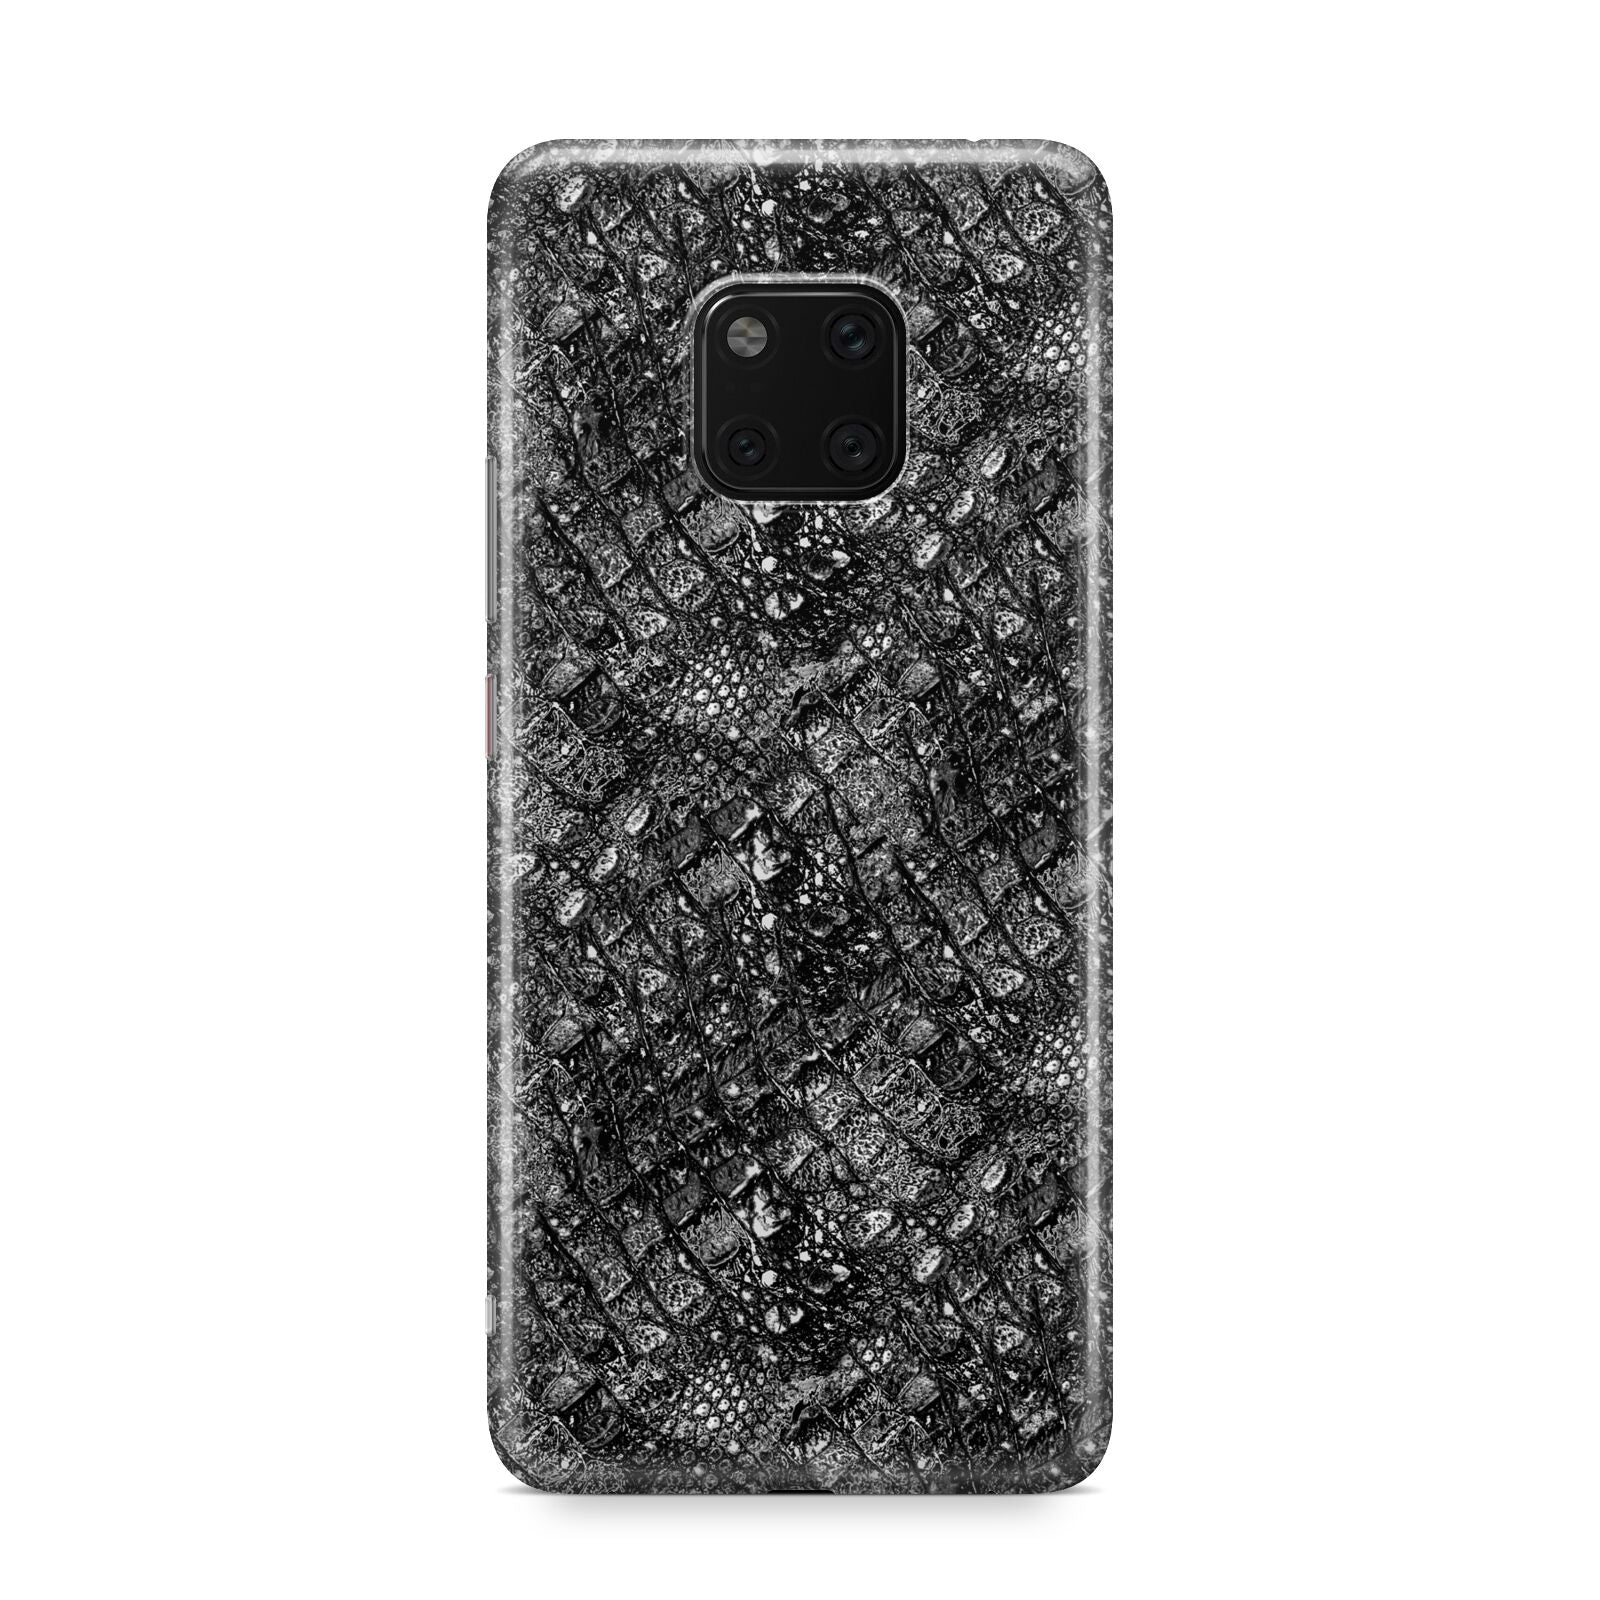 Snakeskin Design Huawei Mate 20 Pro Phone Case